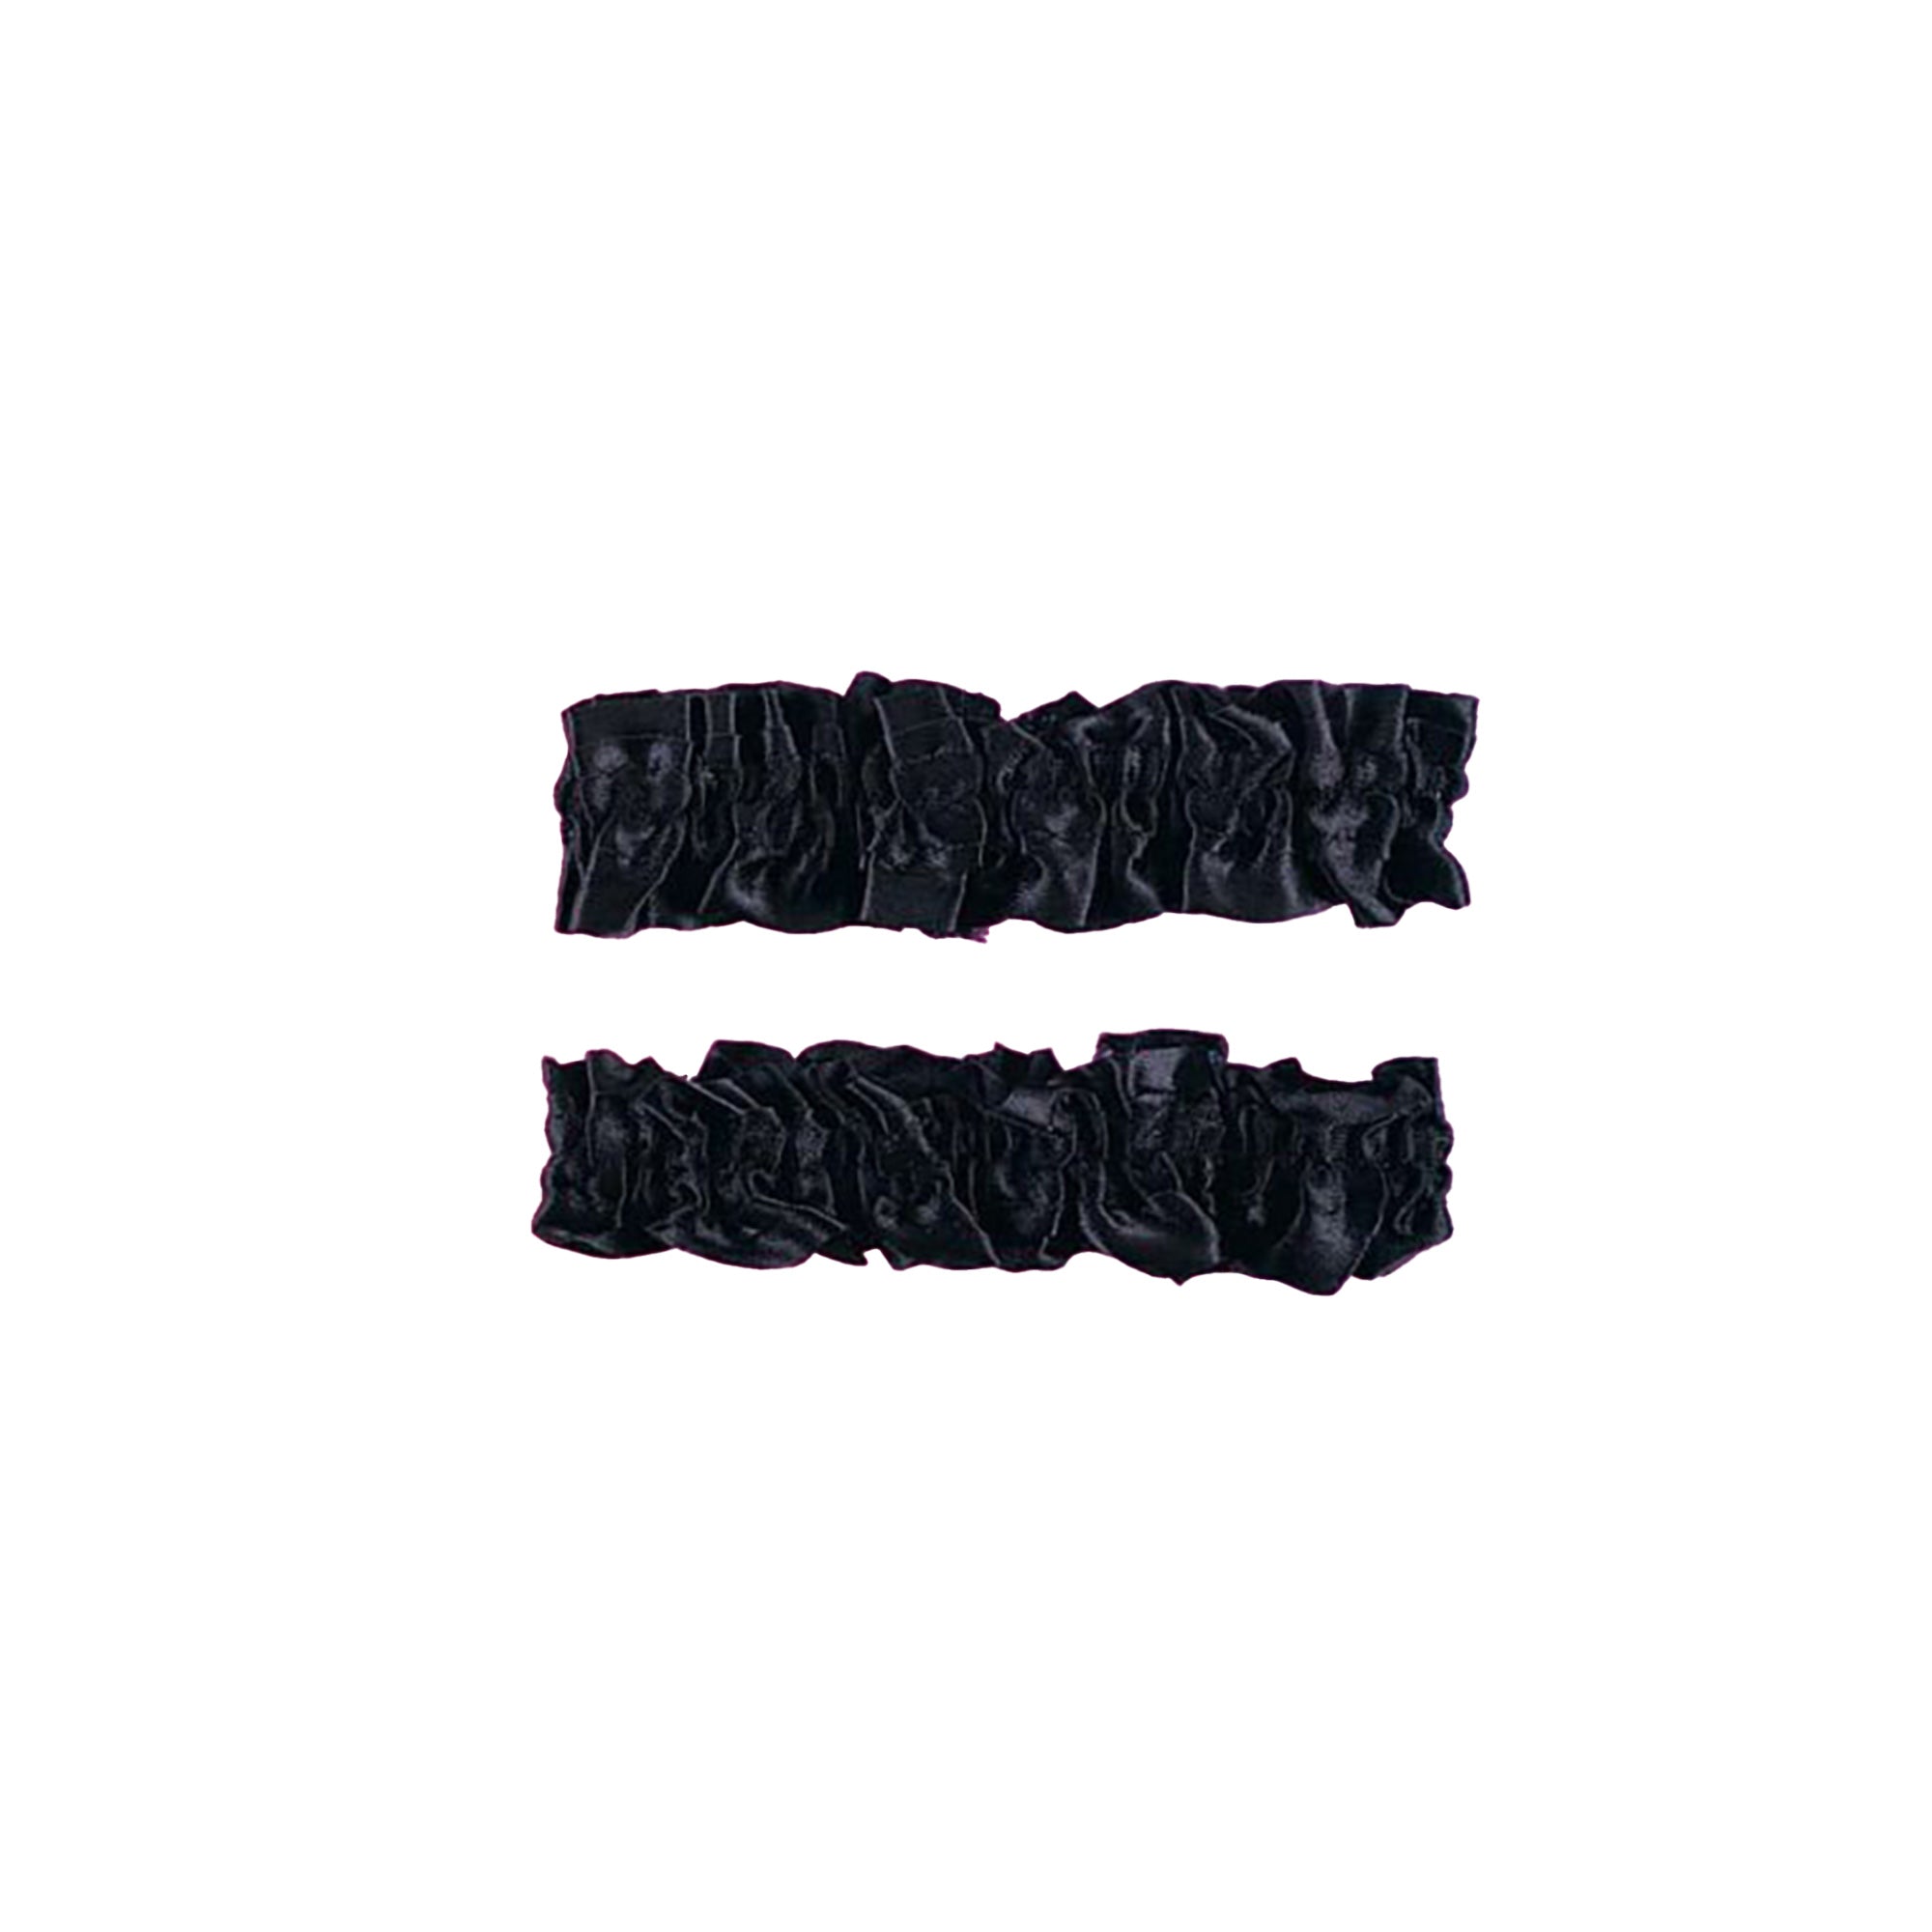 Black Garter Armbands, 2 Count